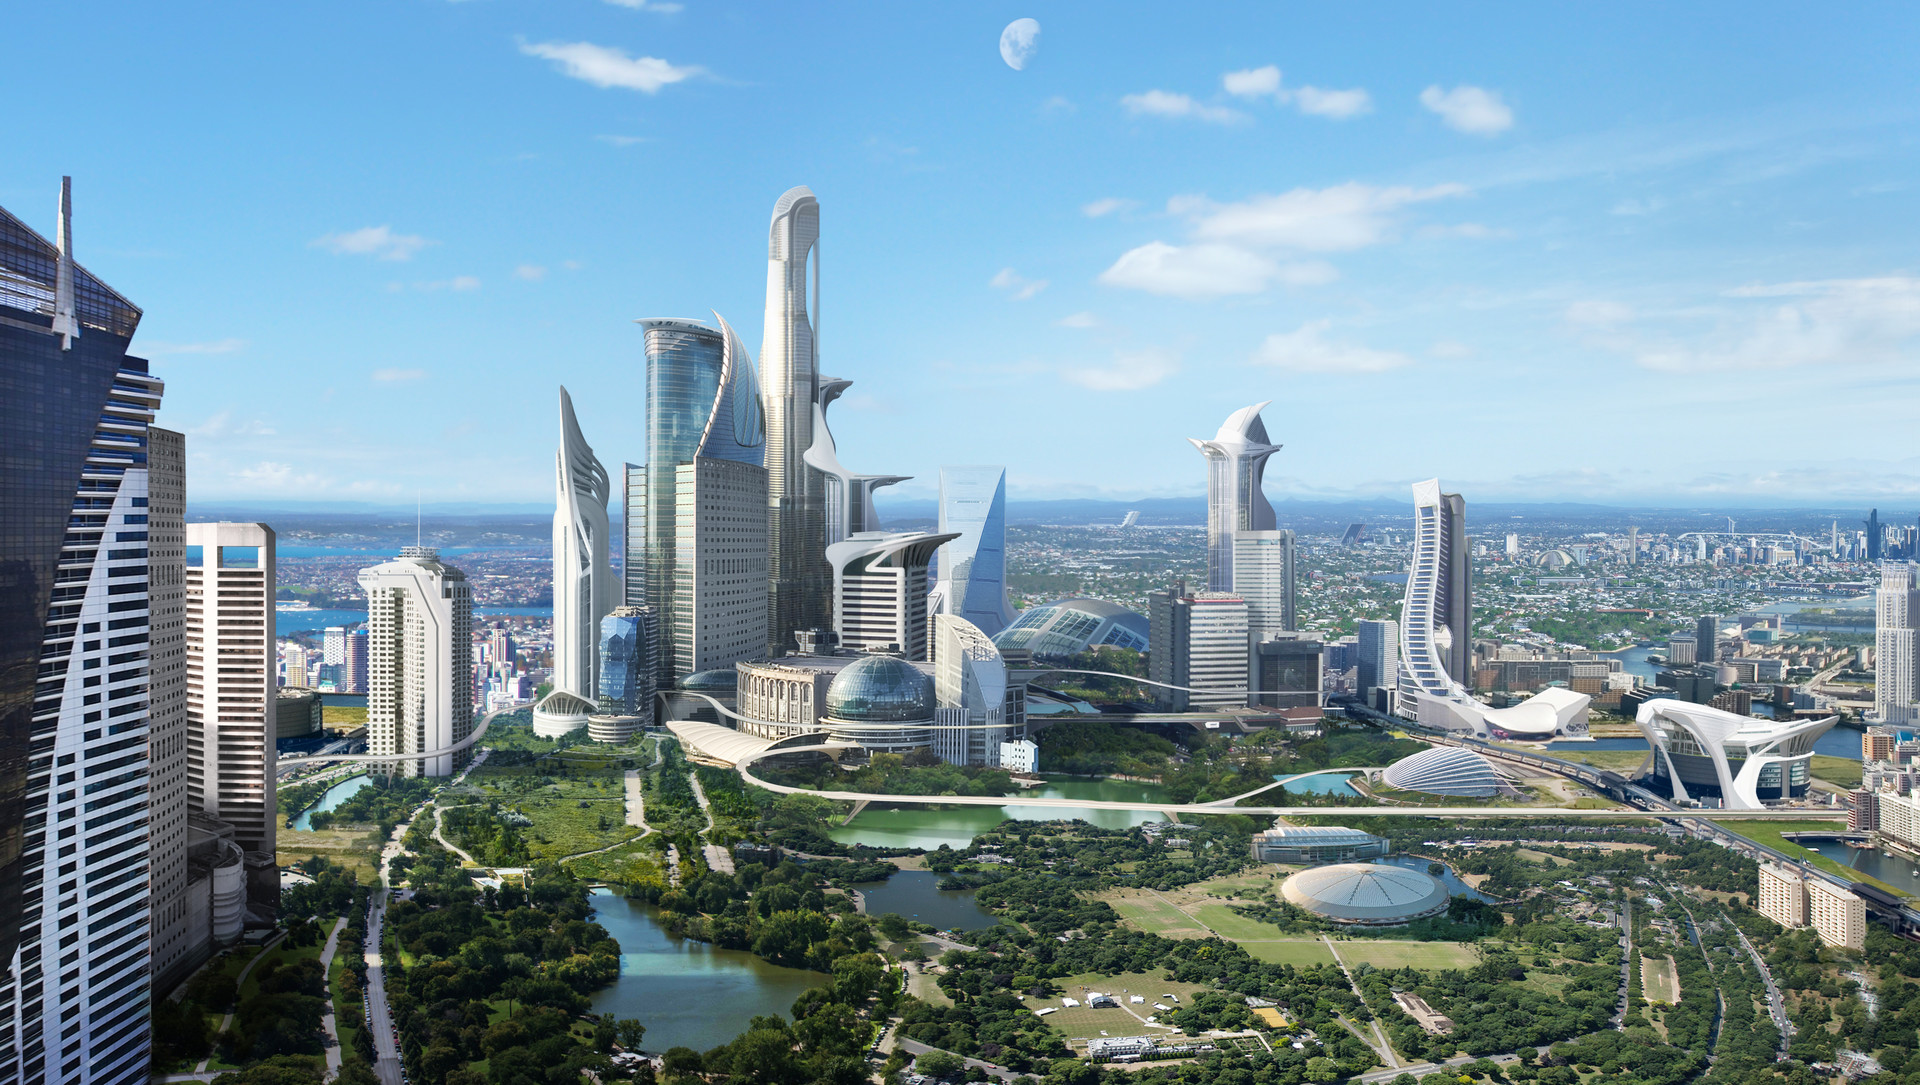 Free download wallpaper City, Sci Fi, Futuristic, Futuristic City on your PC desktop